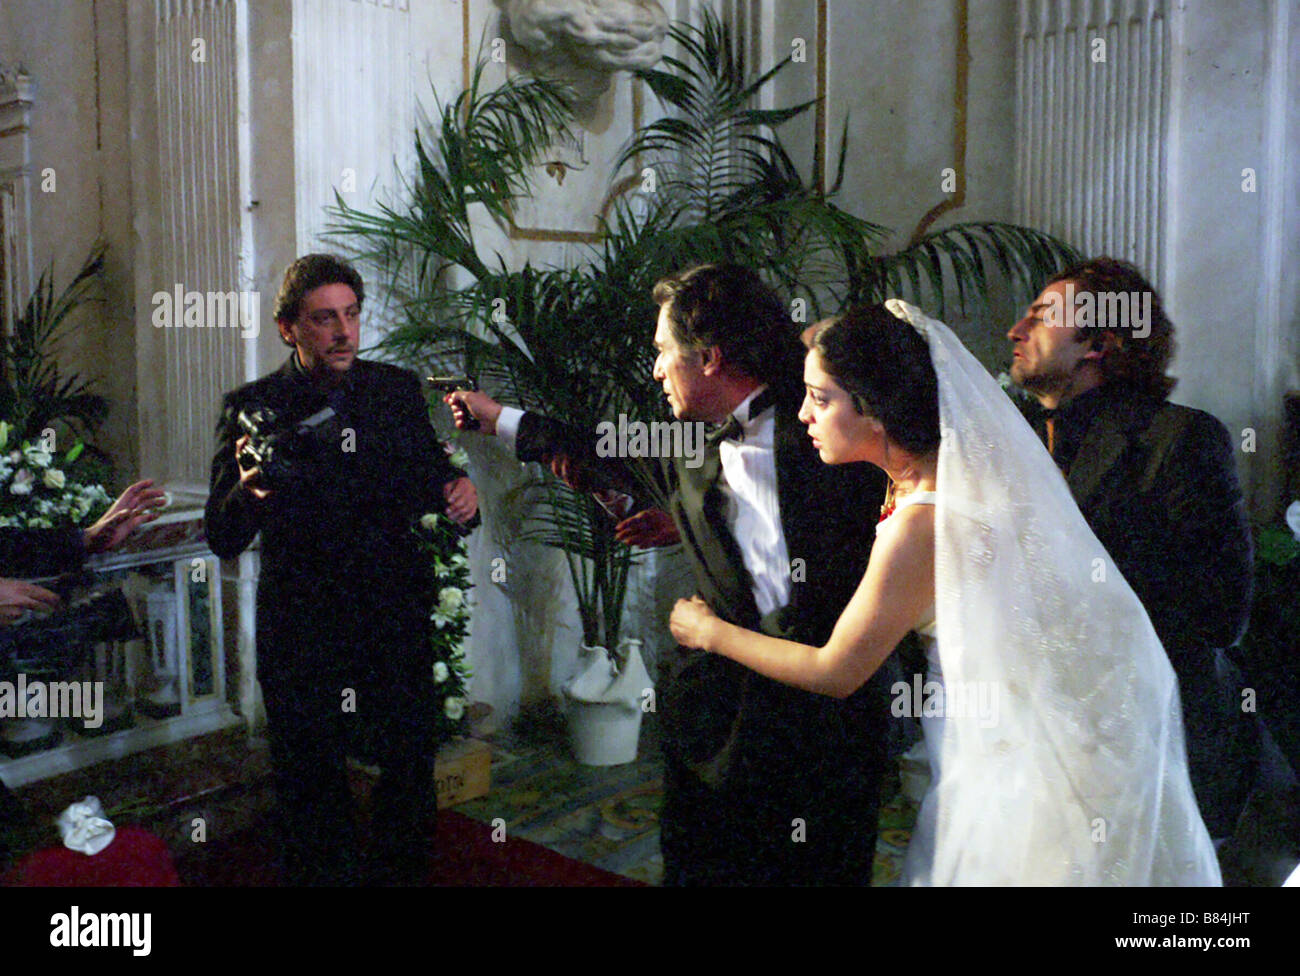 Il Regista di matrimoni Year : 2006 Italy Sergio Castellitto, Sami Frey, Donatella Finocchiaro, Maurizio Donadoni  Director: Marco Bellocchio Stock Photo